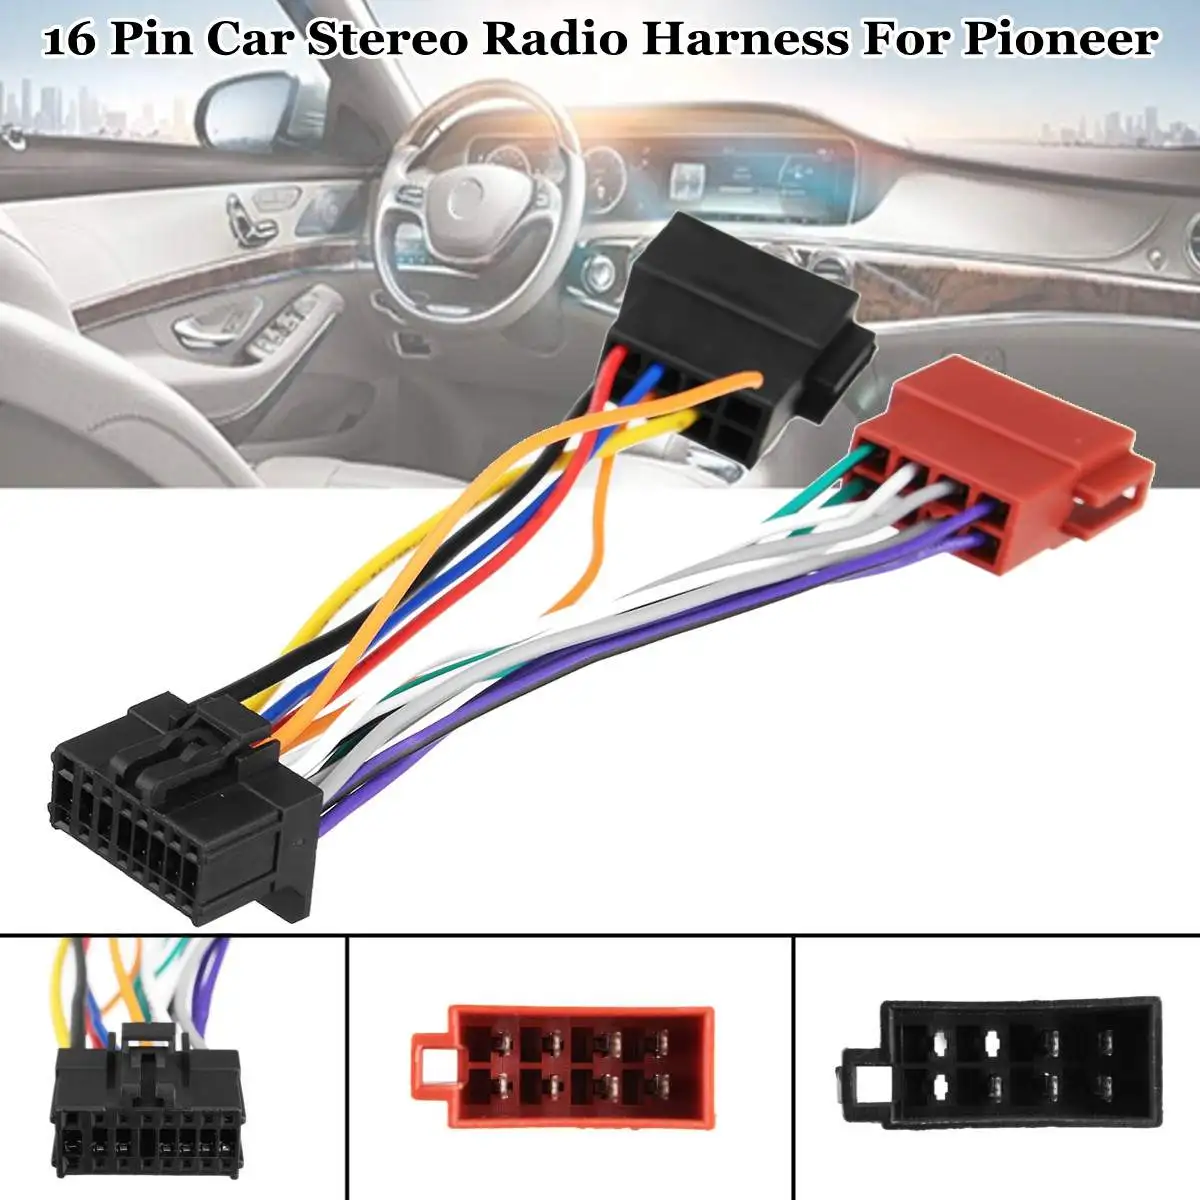 Автомобильный стерео радио ISO жгутовый разъём автомобильной проводки 16-контактный диагностический PI100 для Pioneer 2003-on